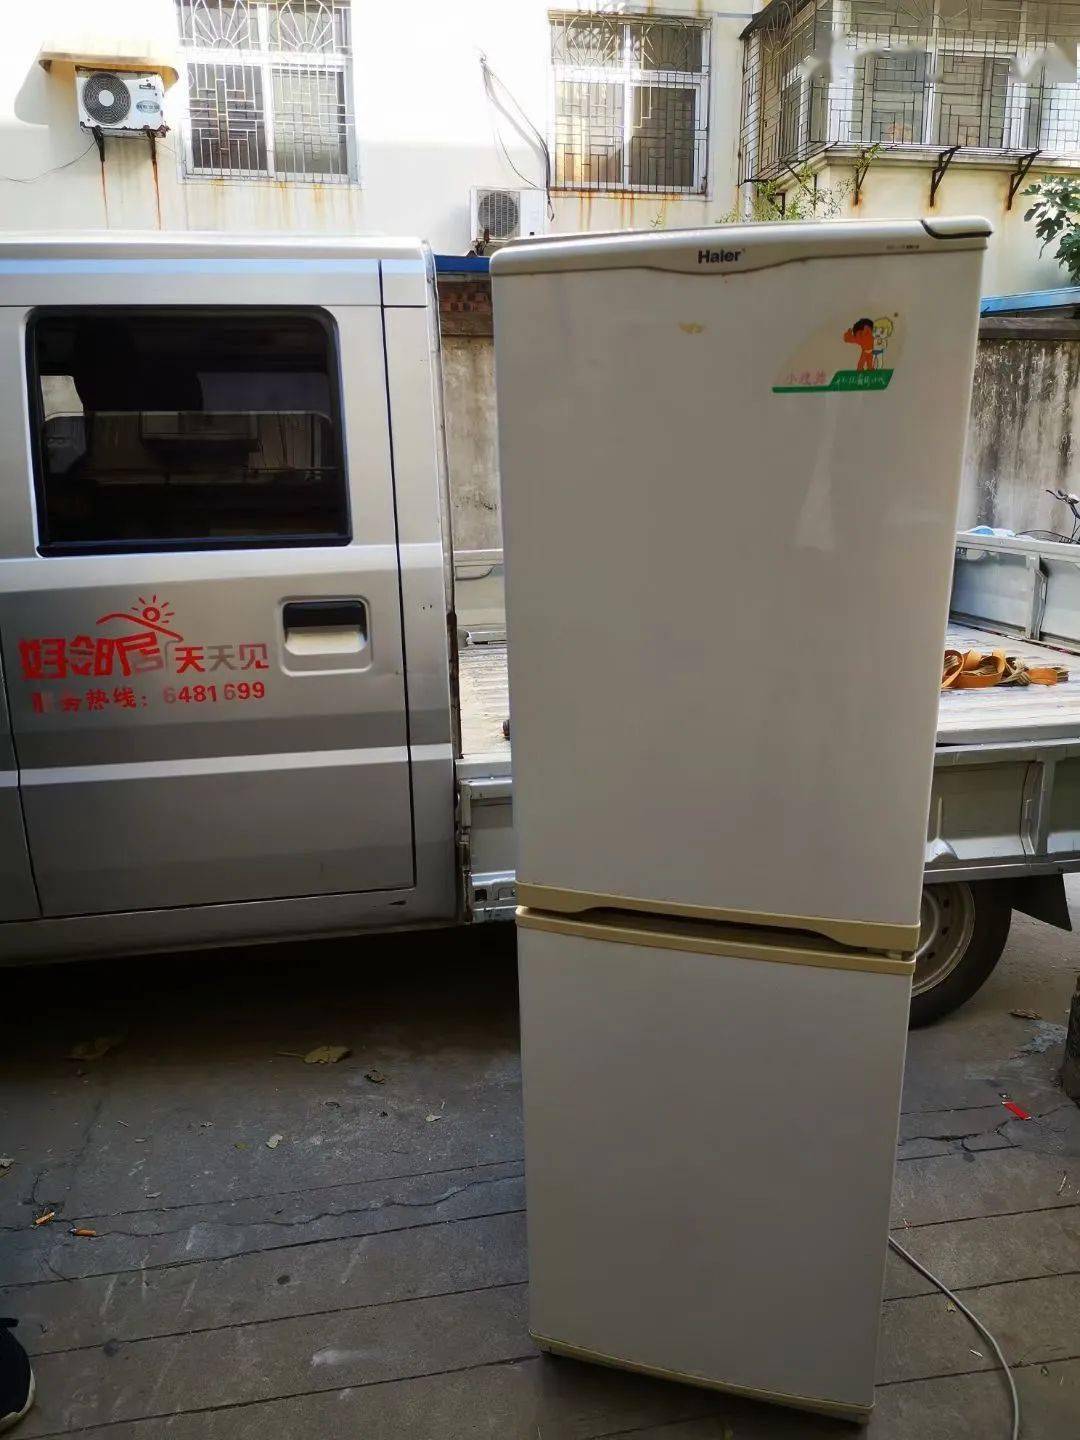 安徽老用户亲身诉说20年海尔冰箱品质始终如一